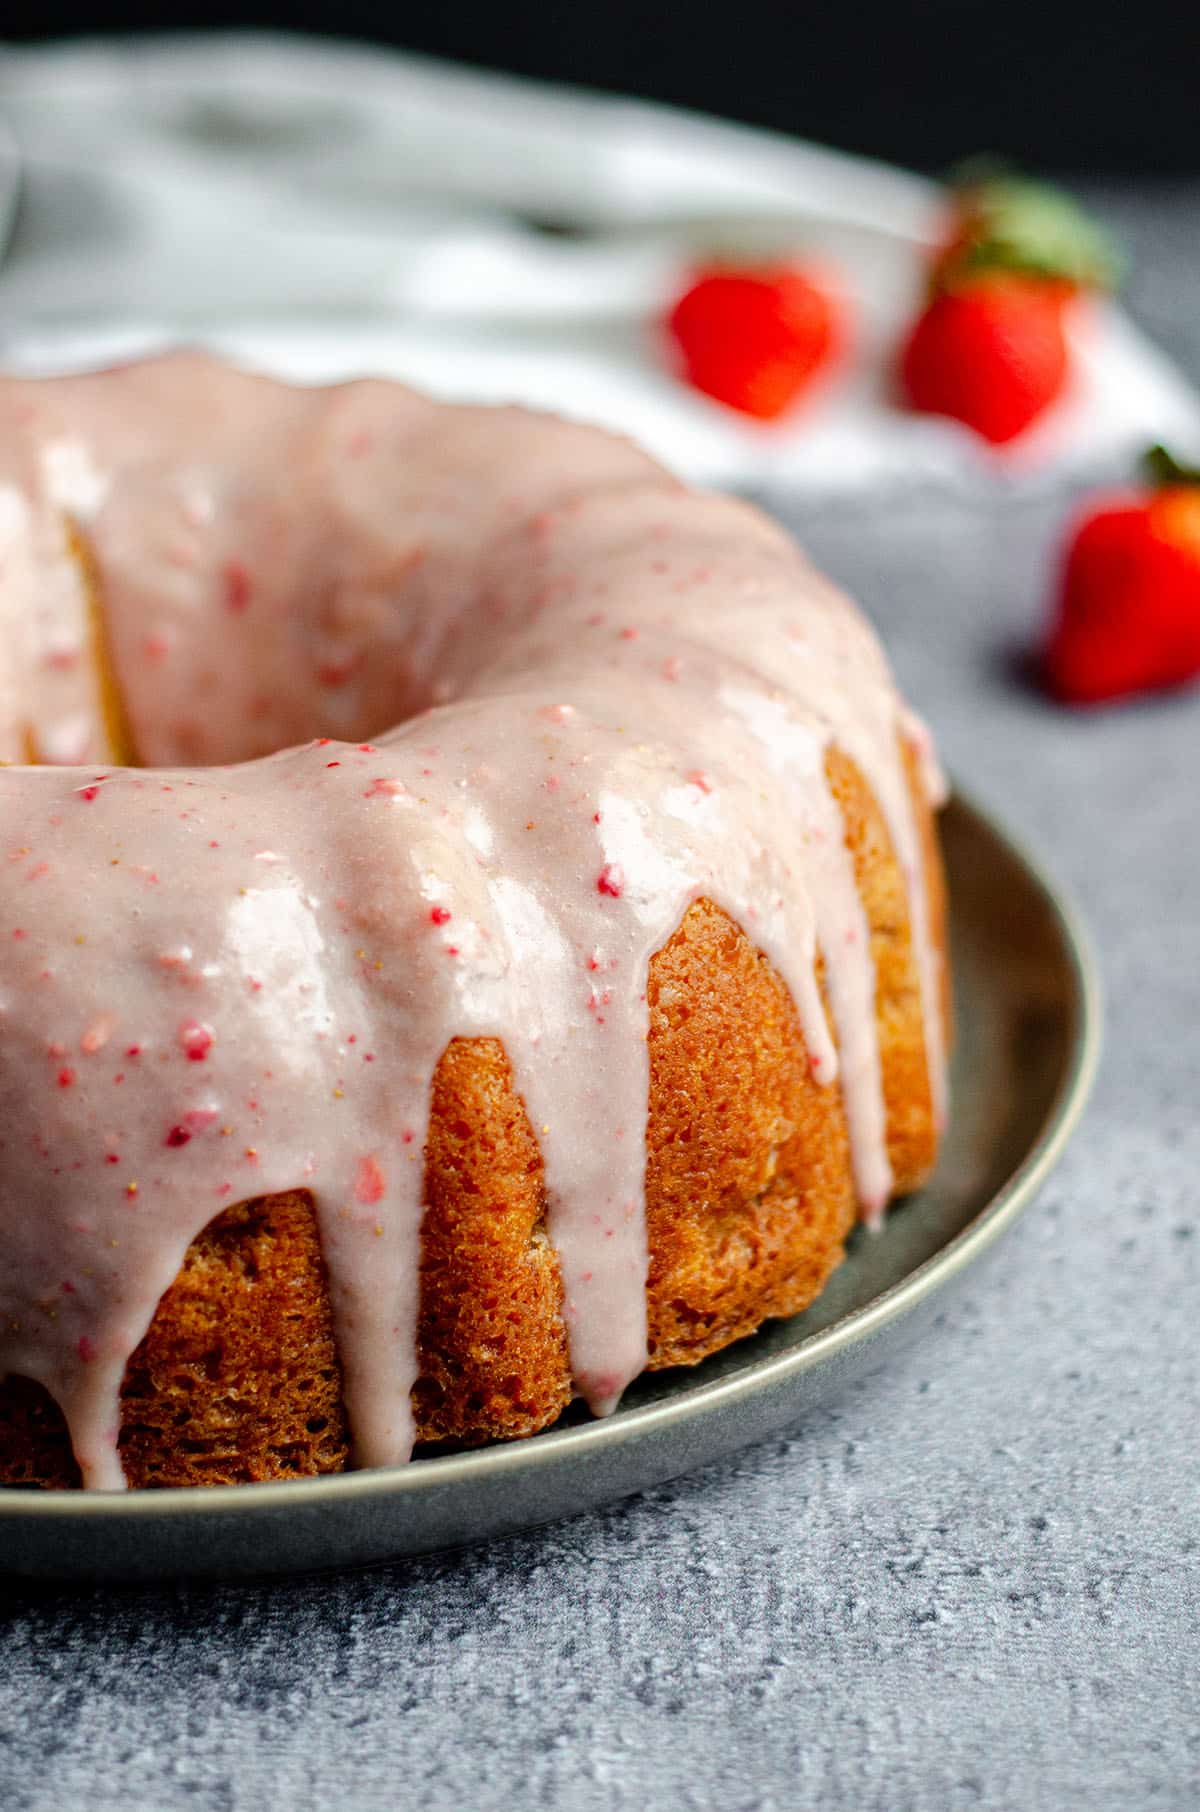 strawberry bundt cake on a plate